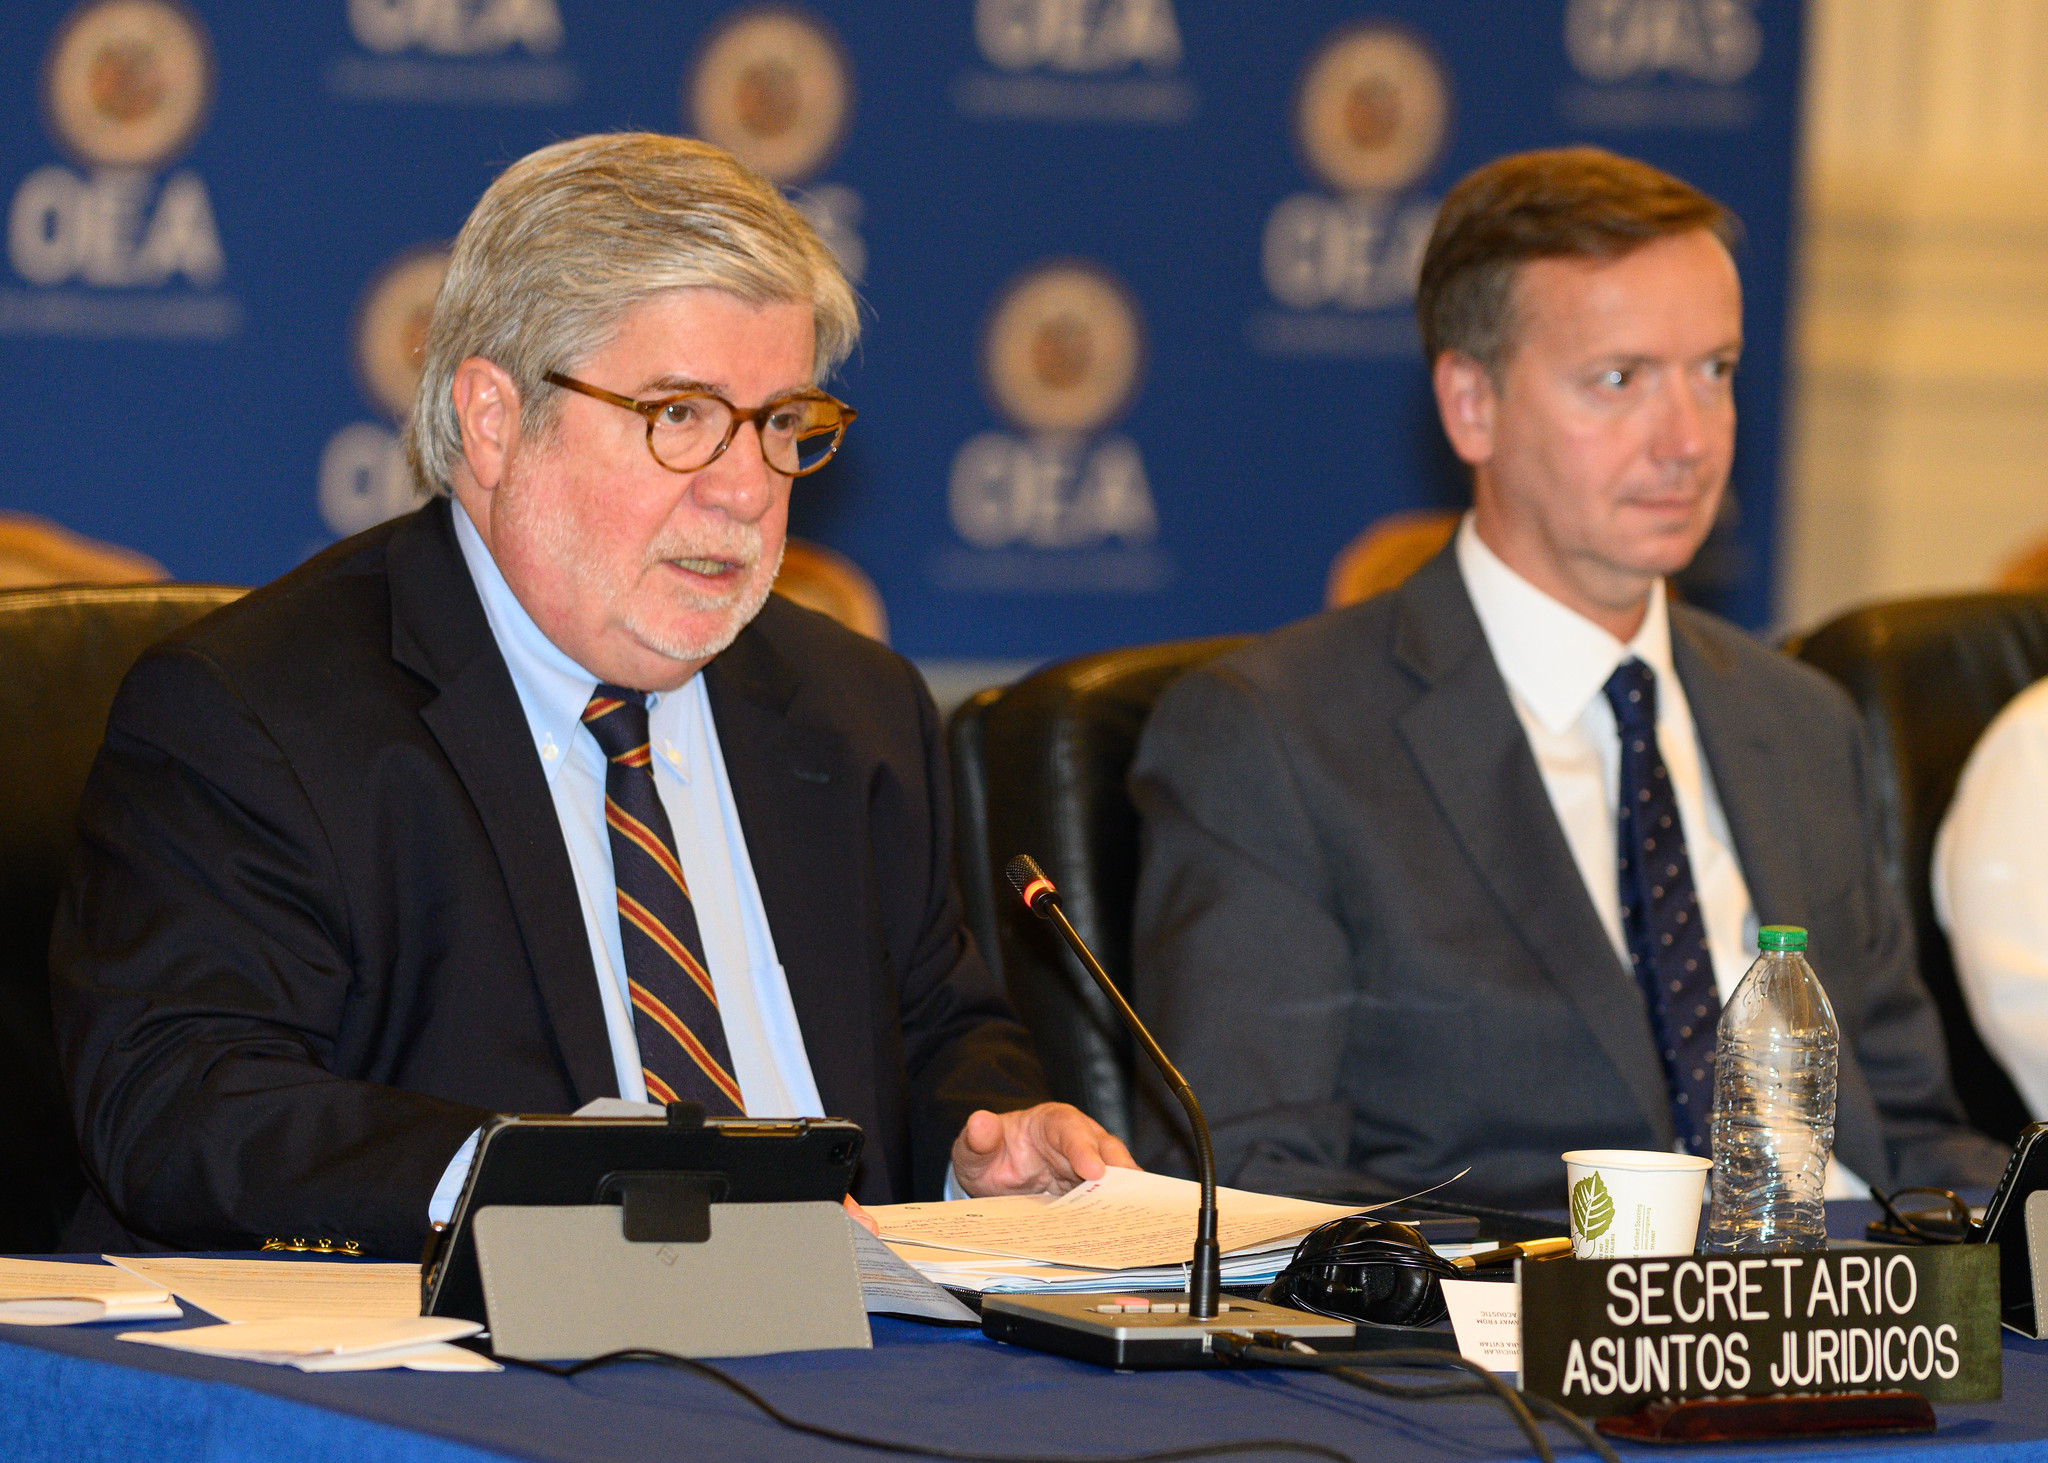 El secretario jurídico de la OEA, Jean Michel Arrighi y el jefe de gabinete del secretario general, Gonzalo Konke, durante la discusión presupuestal de la OEA. Washington, 31 de mayo de 2023. GENTILEZA OEA